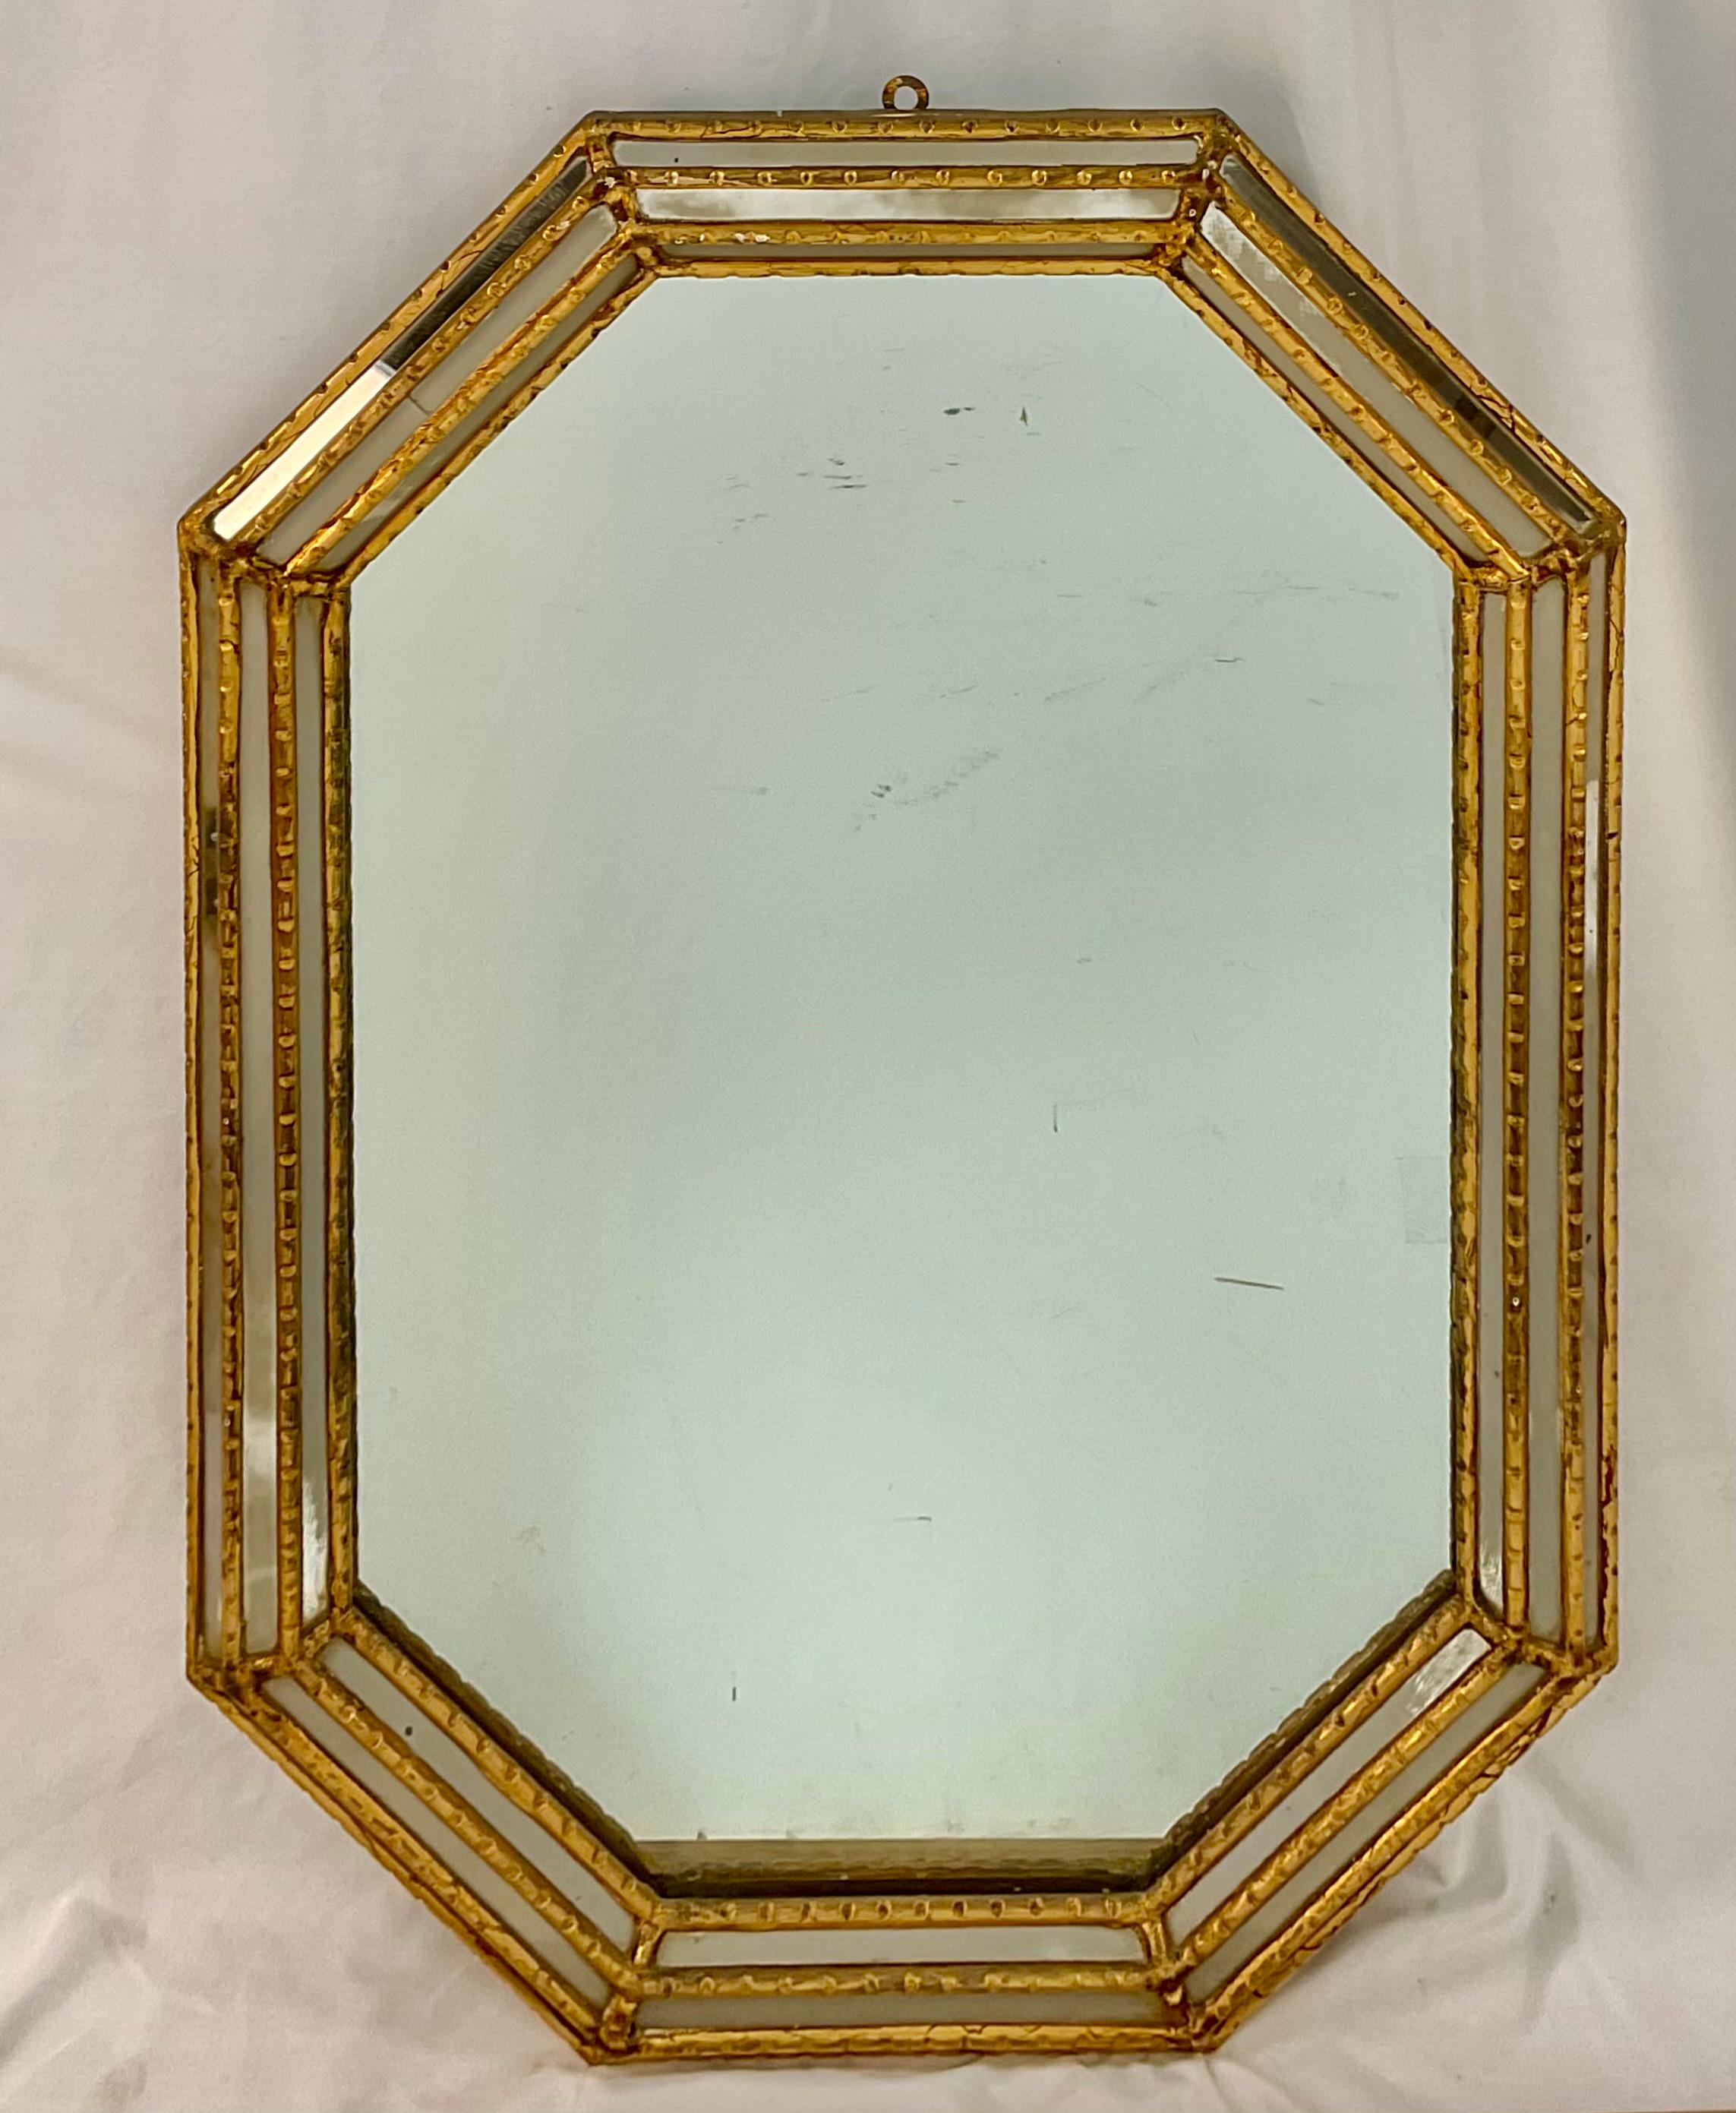 Miroir mural hexagonal vénitien du début du 20e siècle. Le cadre est en bois doré avec des inserts étroits en miroir. Estampille 